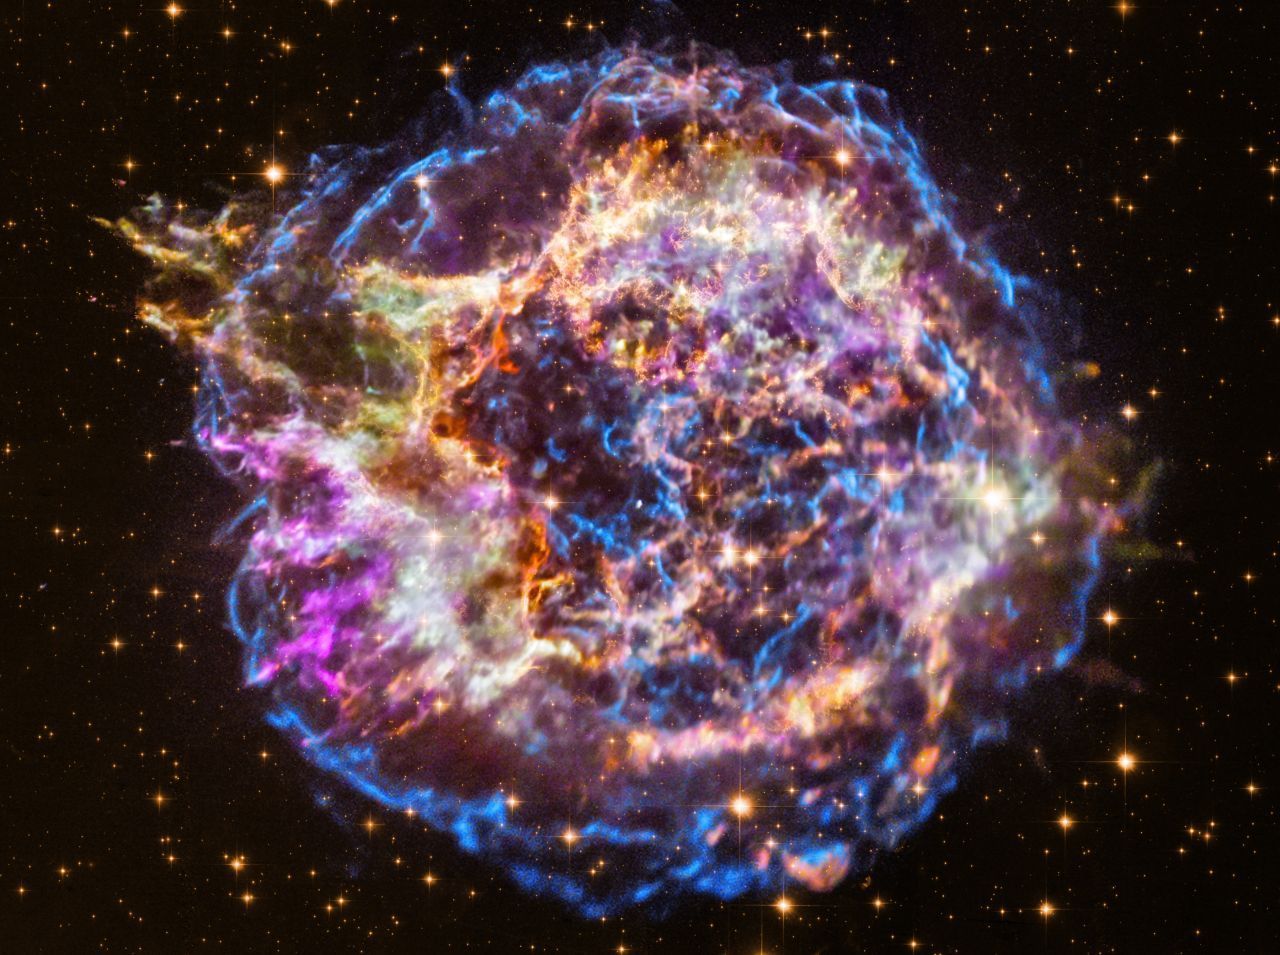 Mit seinen Röntgen-Sensoren soll IXPE auch Sterne untersuchen, die in einer Supernova explodiert sind (hier die Überreste von Cassiopeia A, aufgenommen vom Weltraumteleskop Chandra).